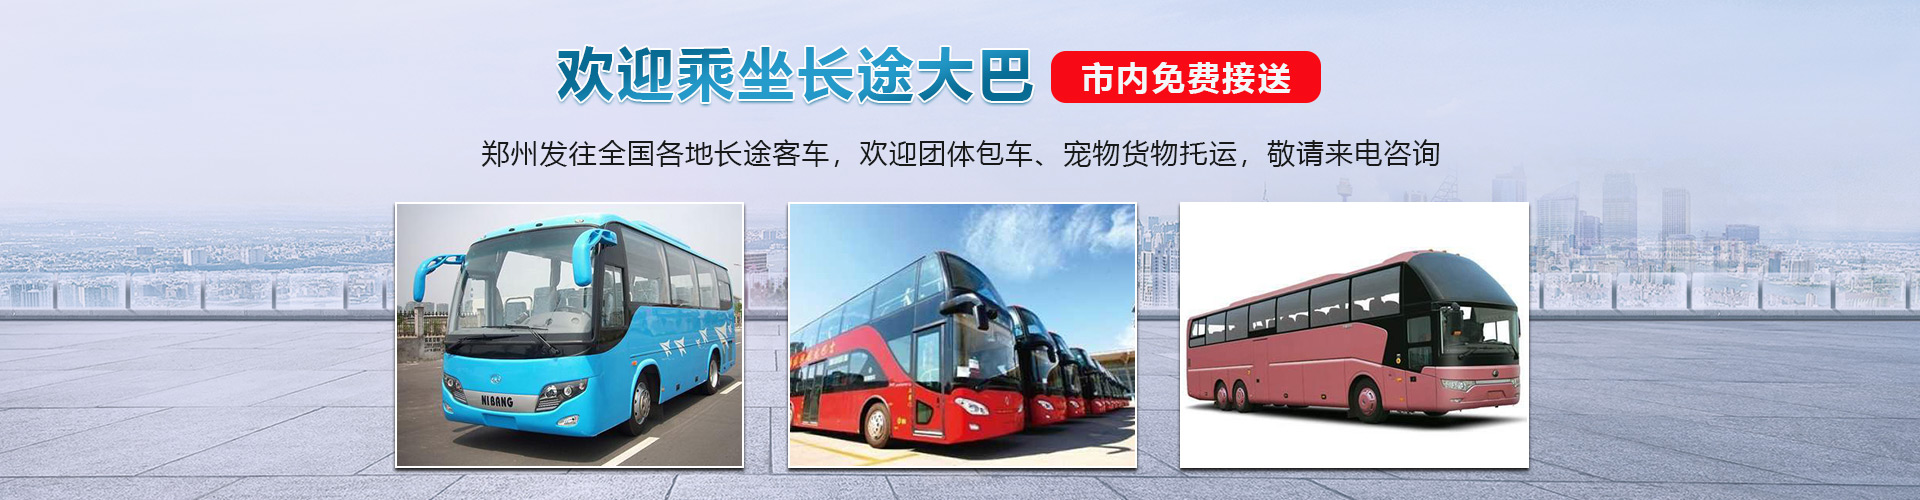 郑州到威海的大巴车承接货物运输